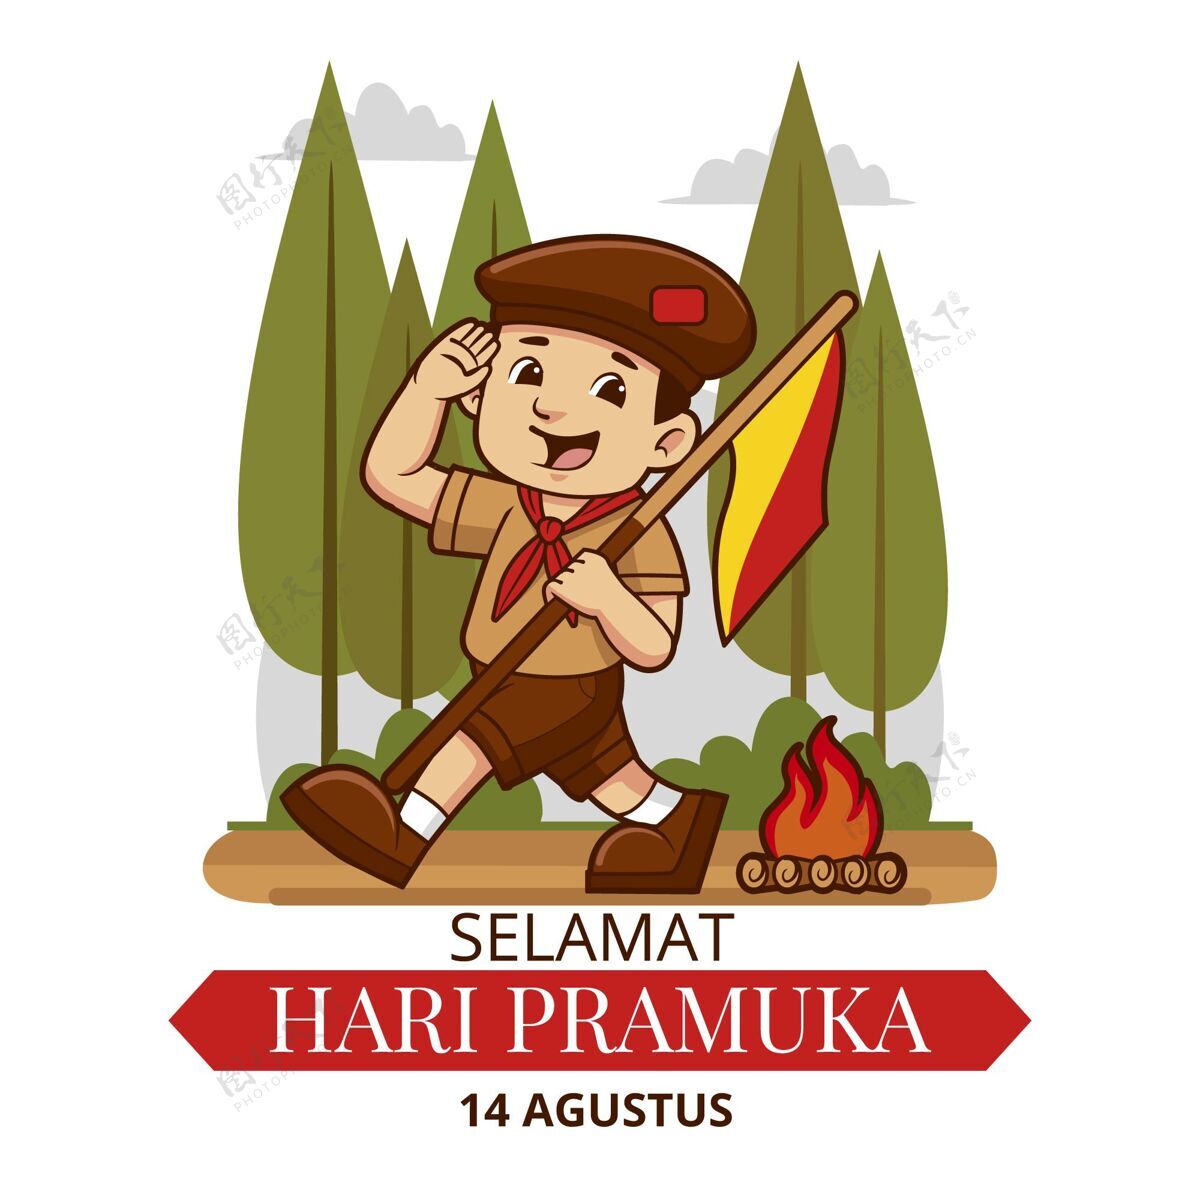 印尼卡通普拉木卡日插画8月14日庆祝印尼